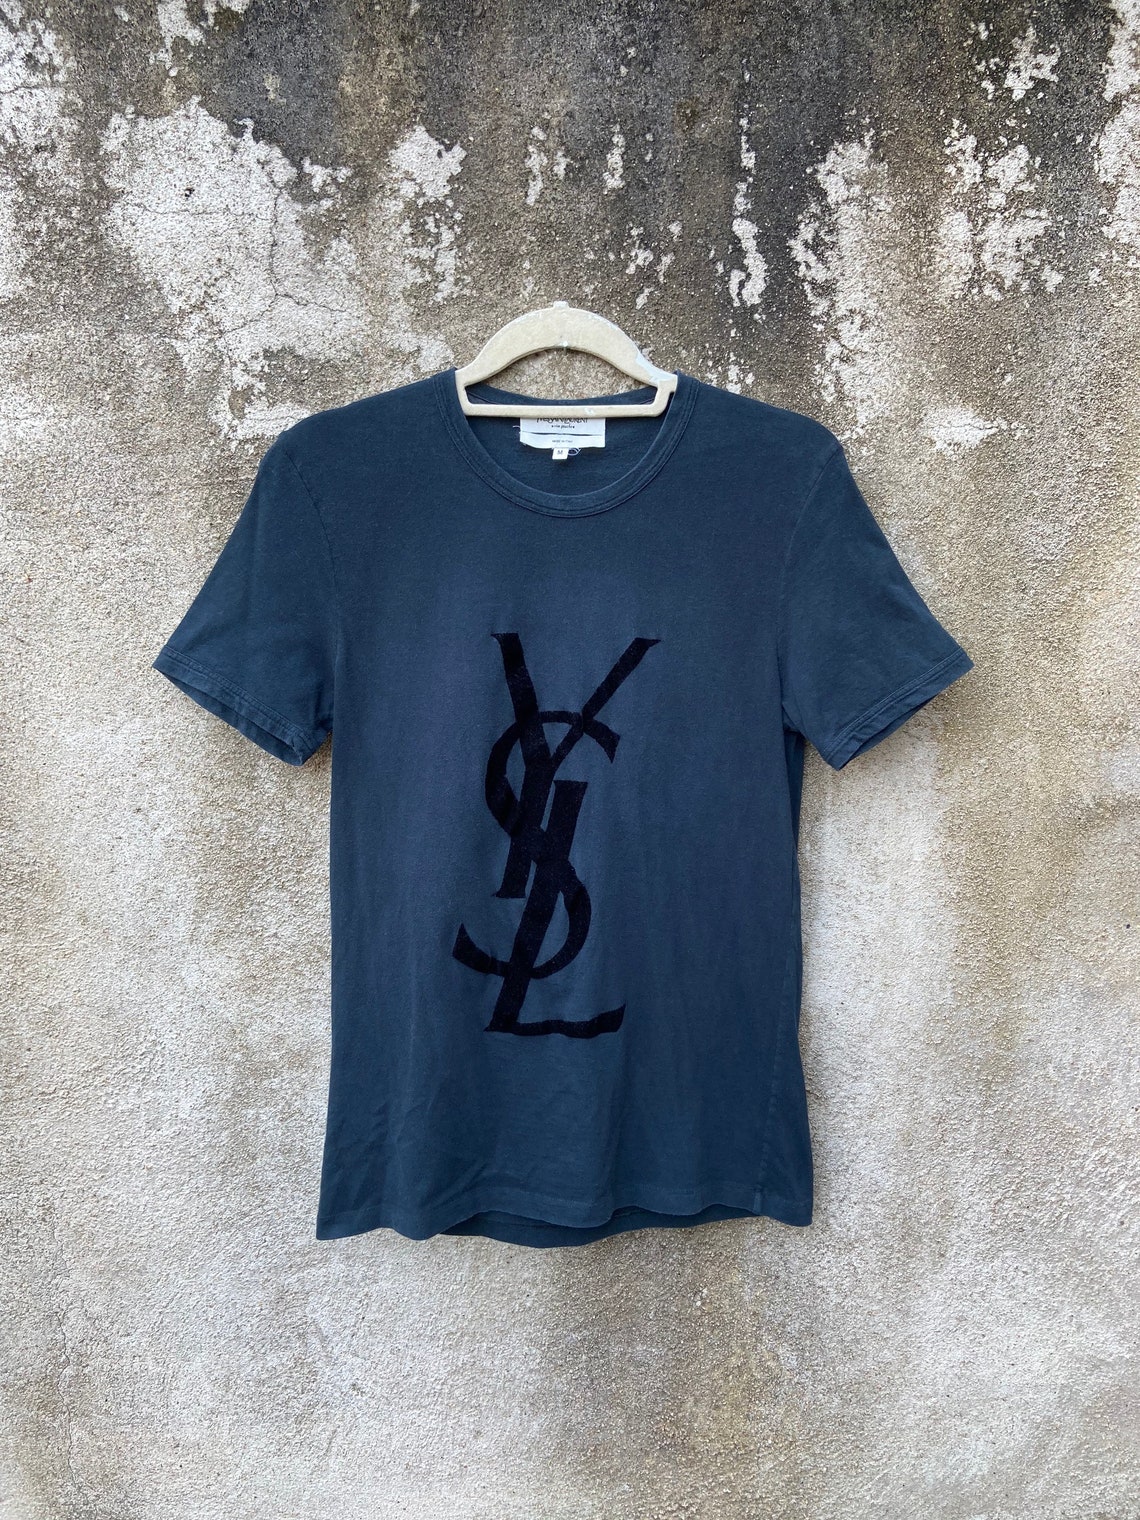 Yves Saint Laurent Shirt YSL Big Logo T Shirt Size Medium | Etsy